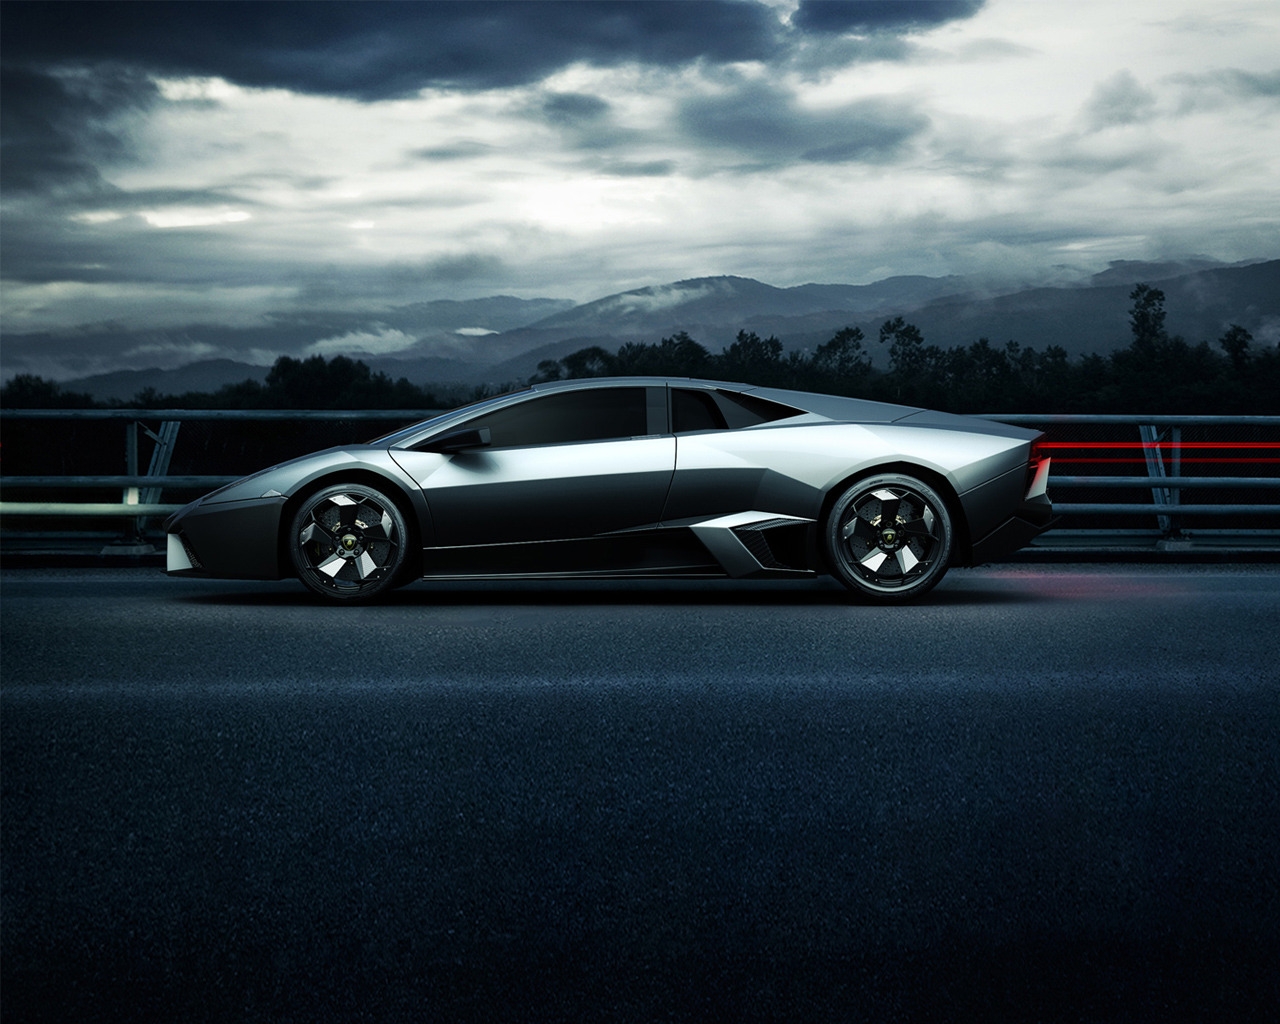 Lamborghini Sport Side Angle for 1280 x 1024 resolution